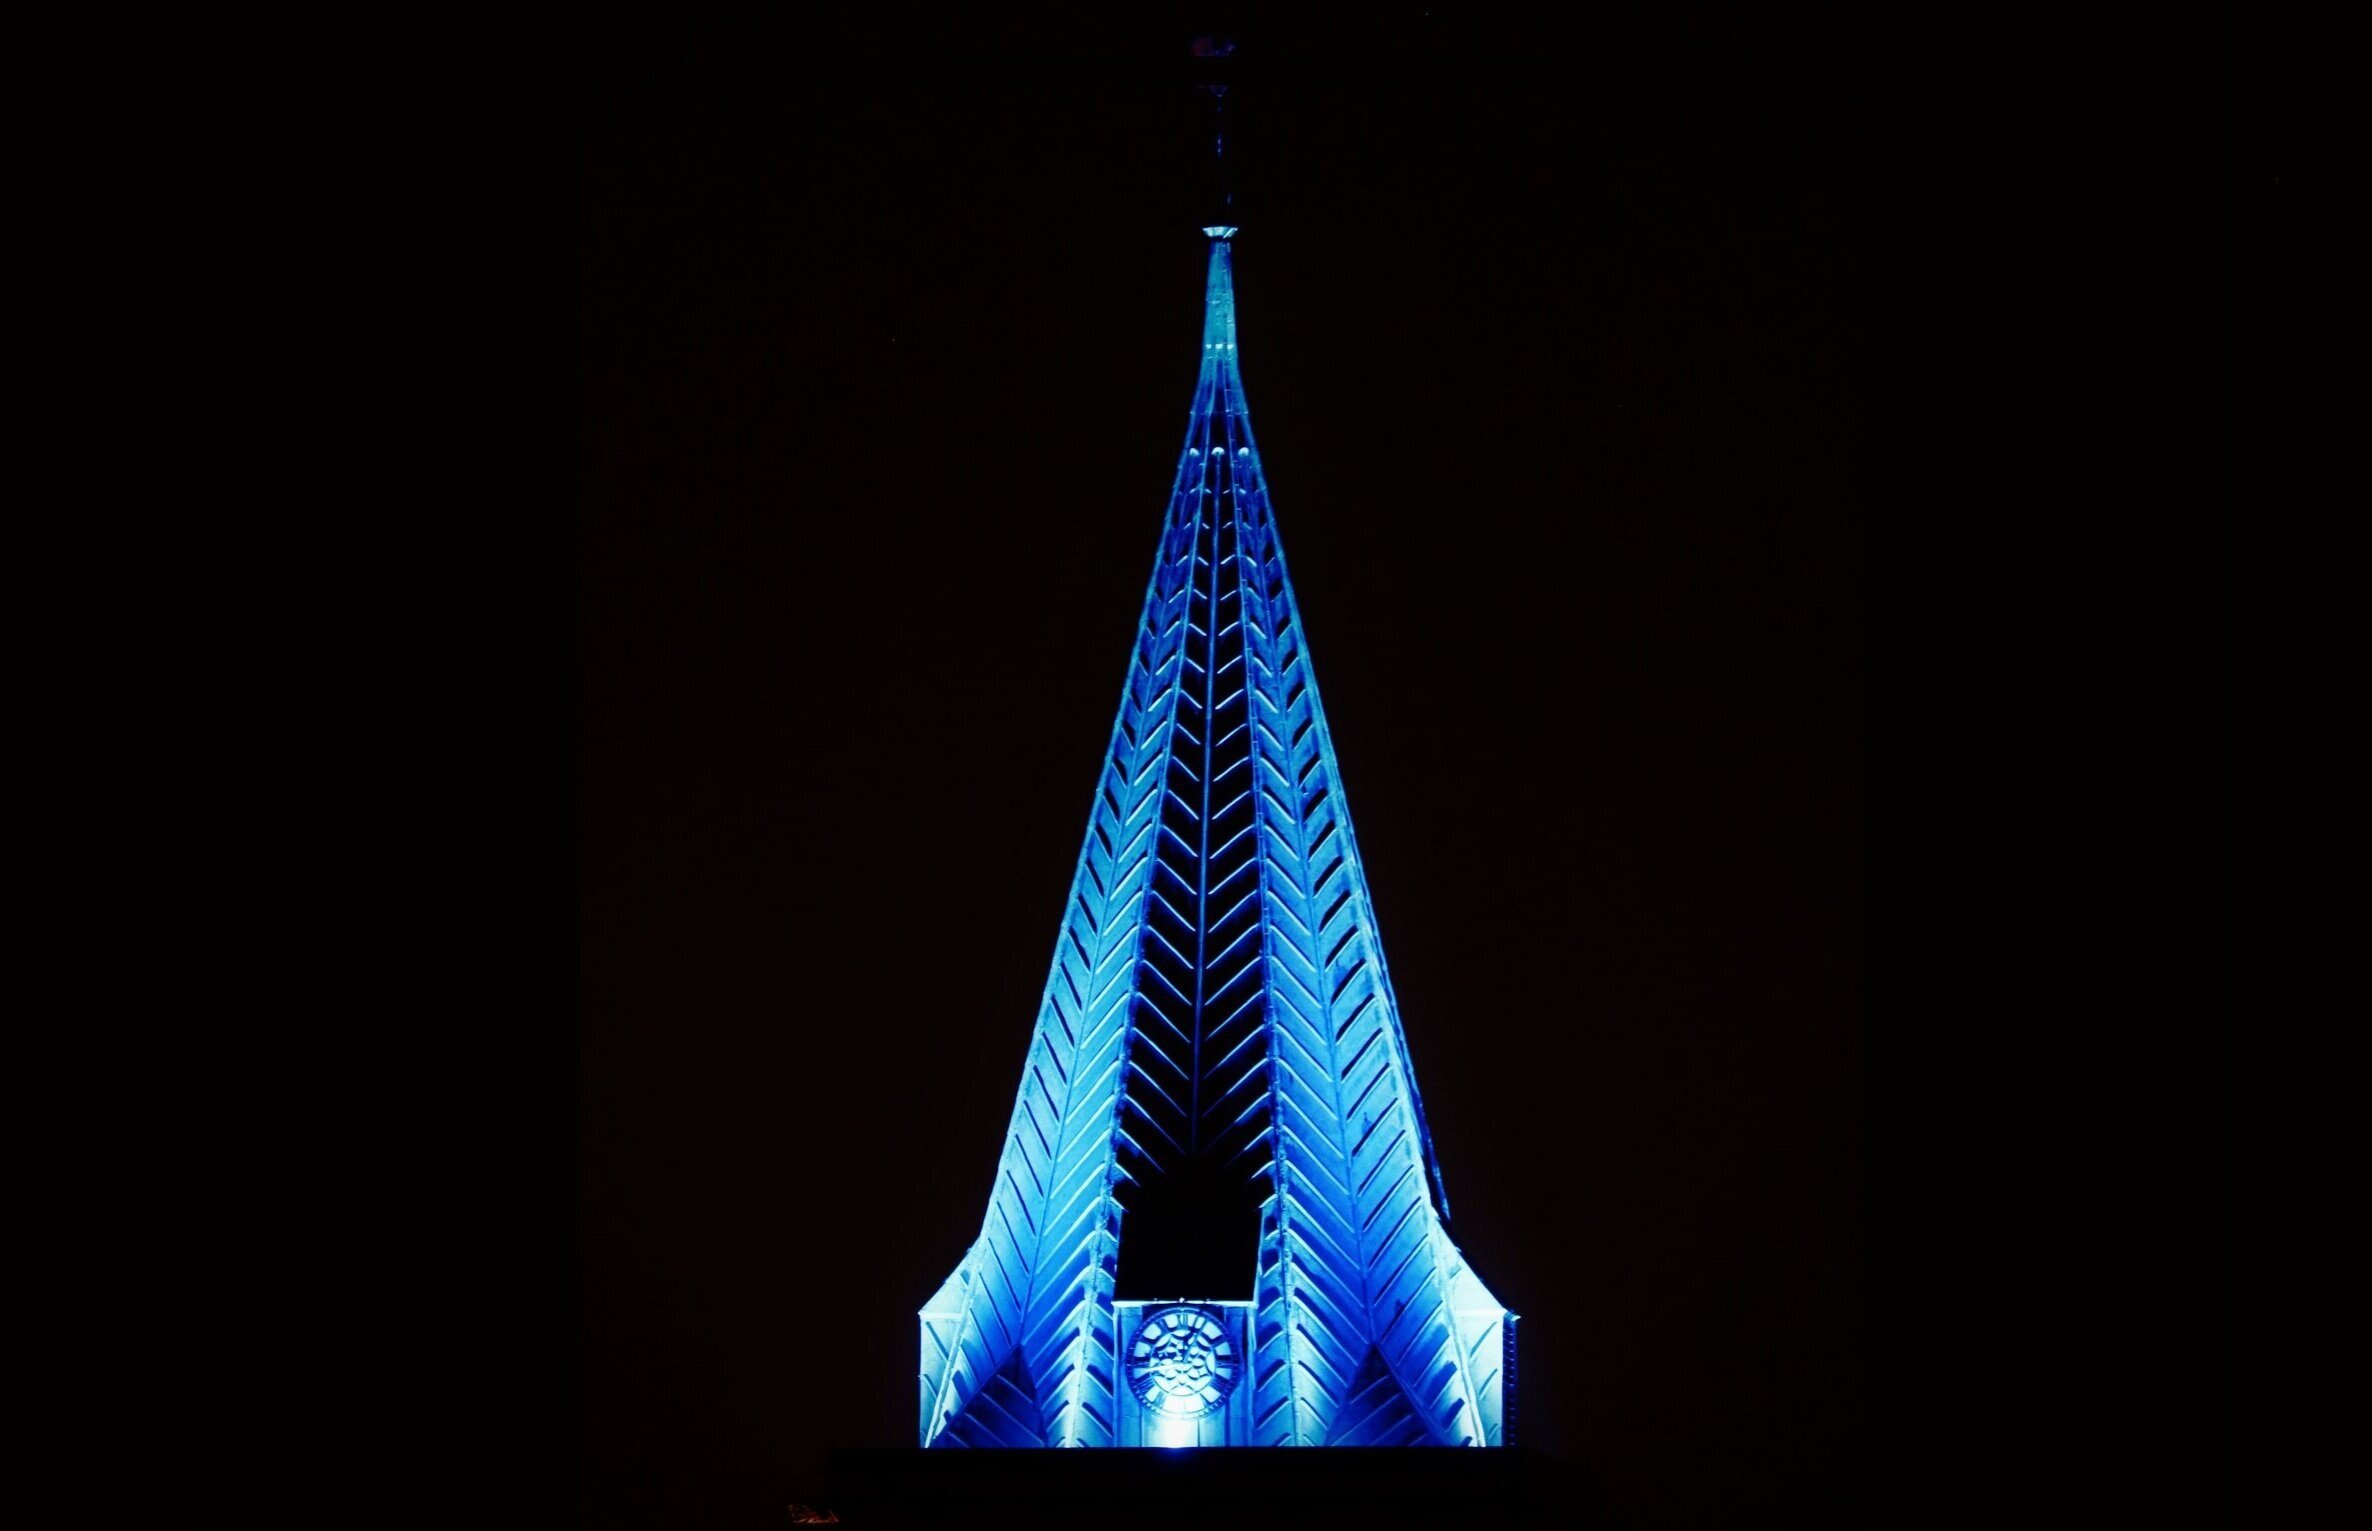 2020-04-07_blue_spire_lighting_photo.jpg